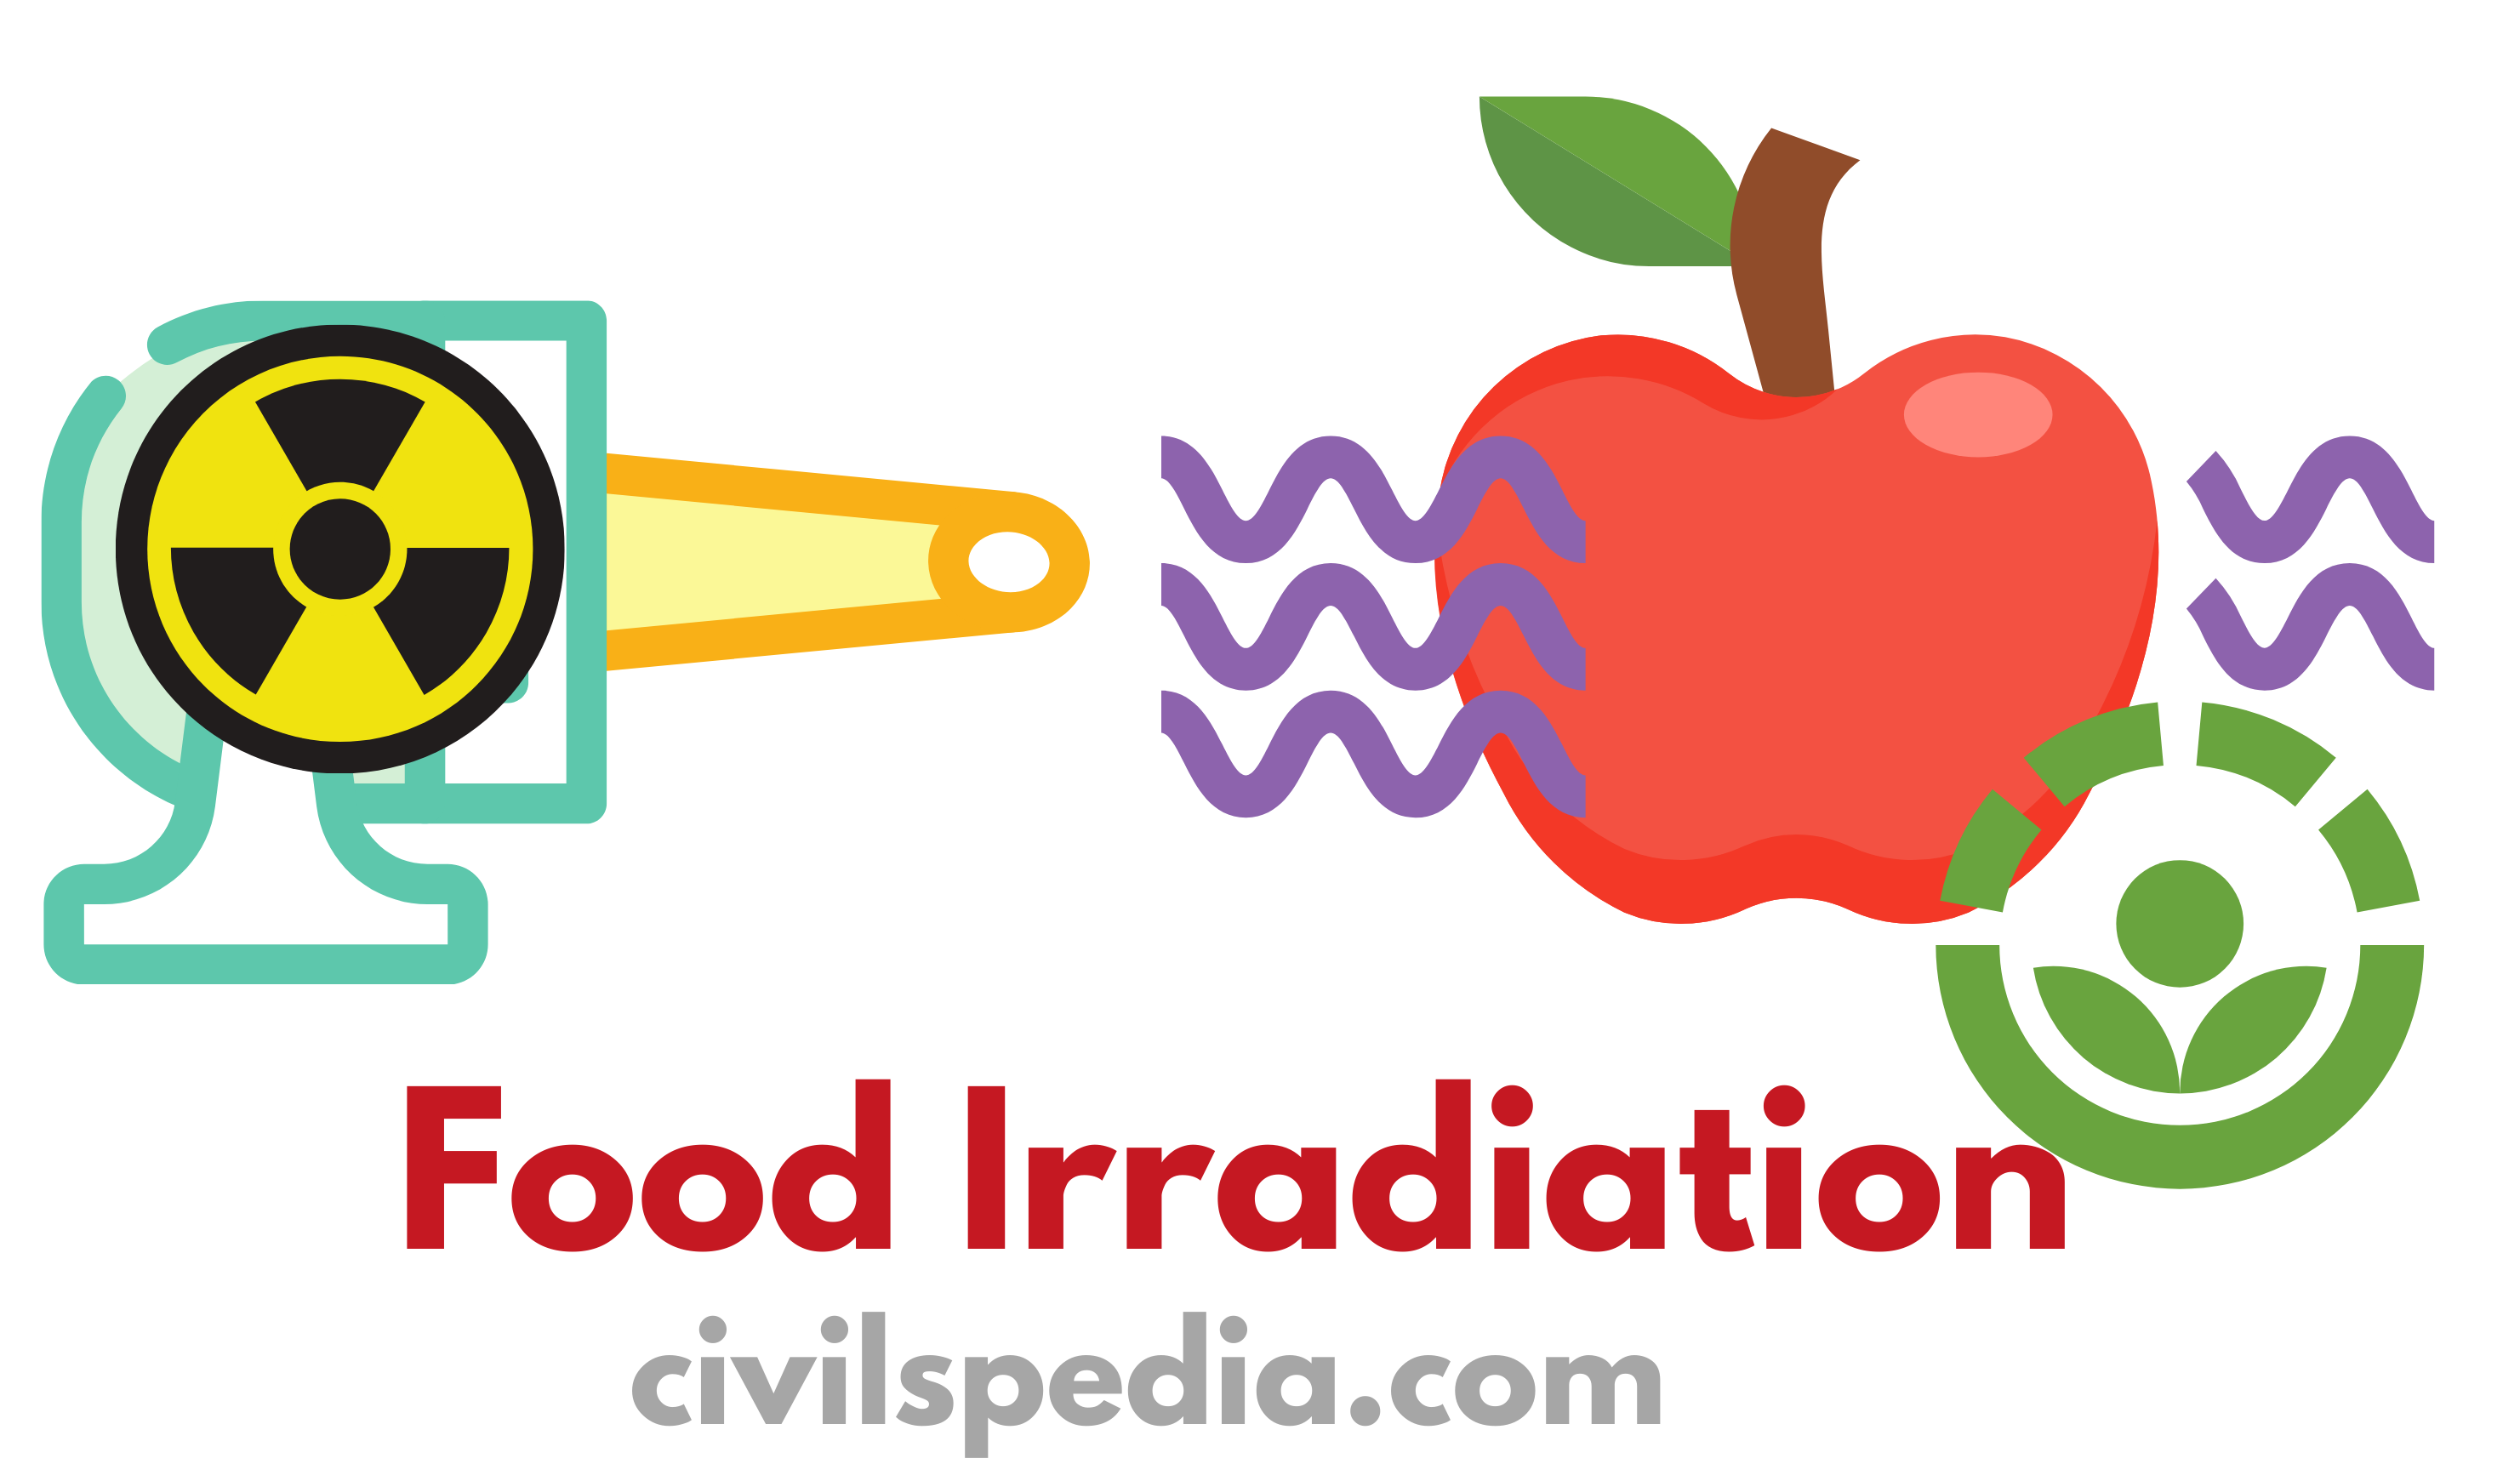 Food irradiation